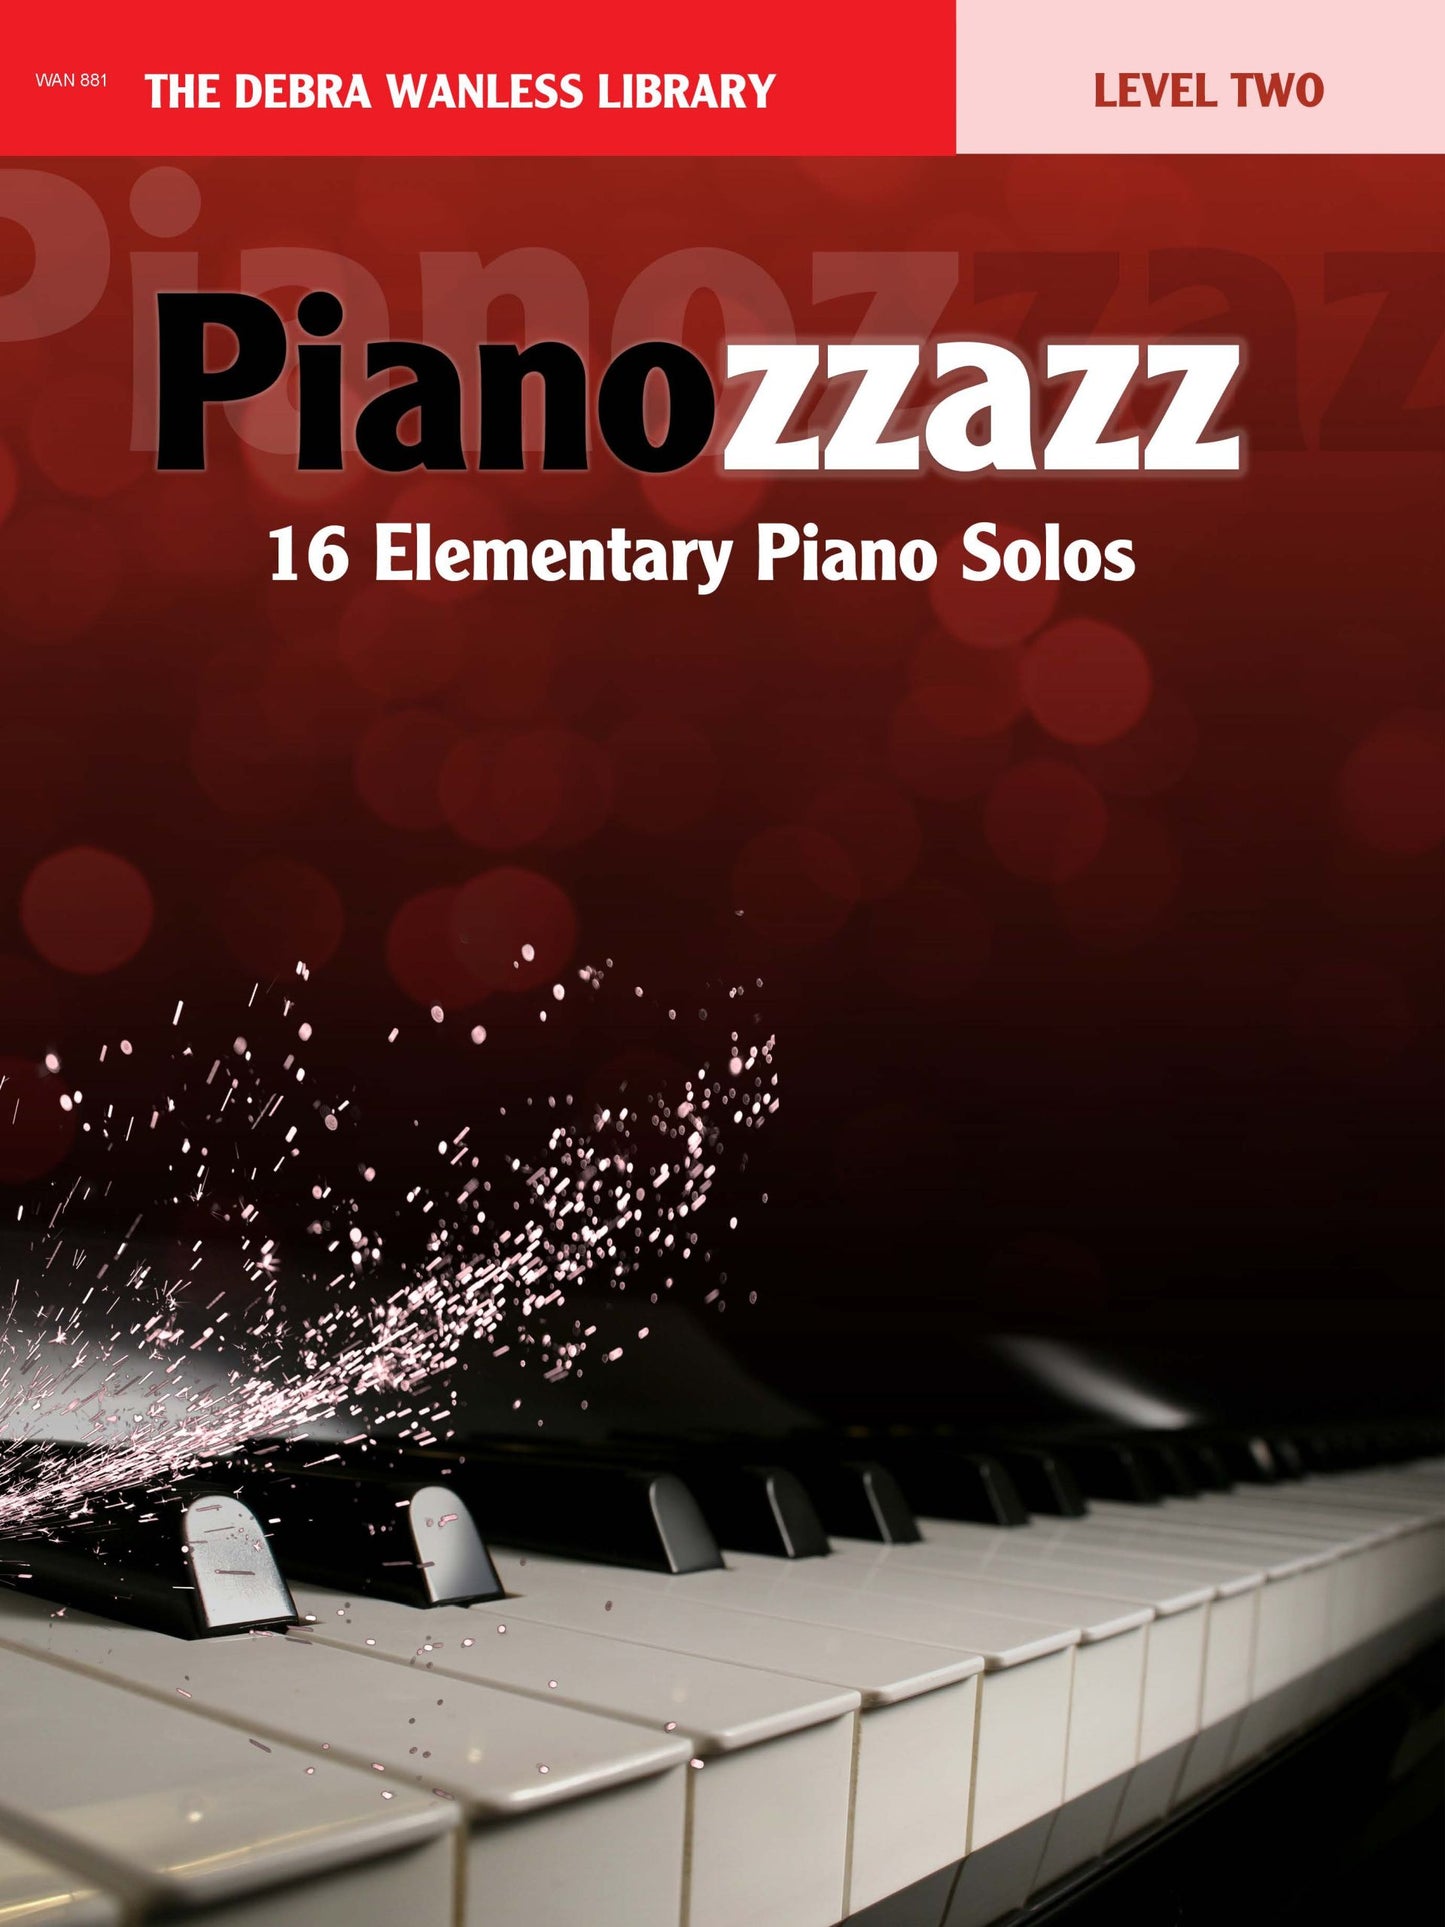 Pianozzazz Level Two